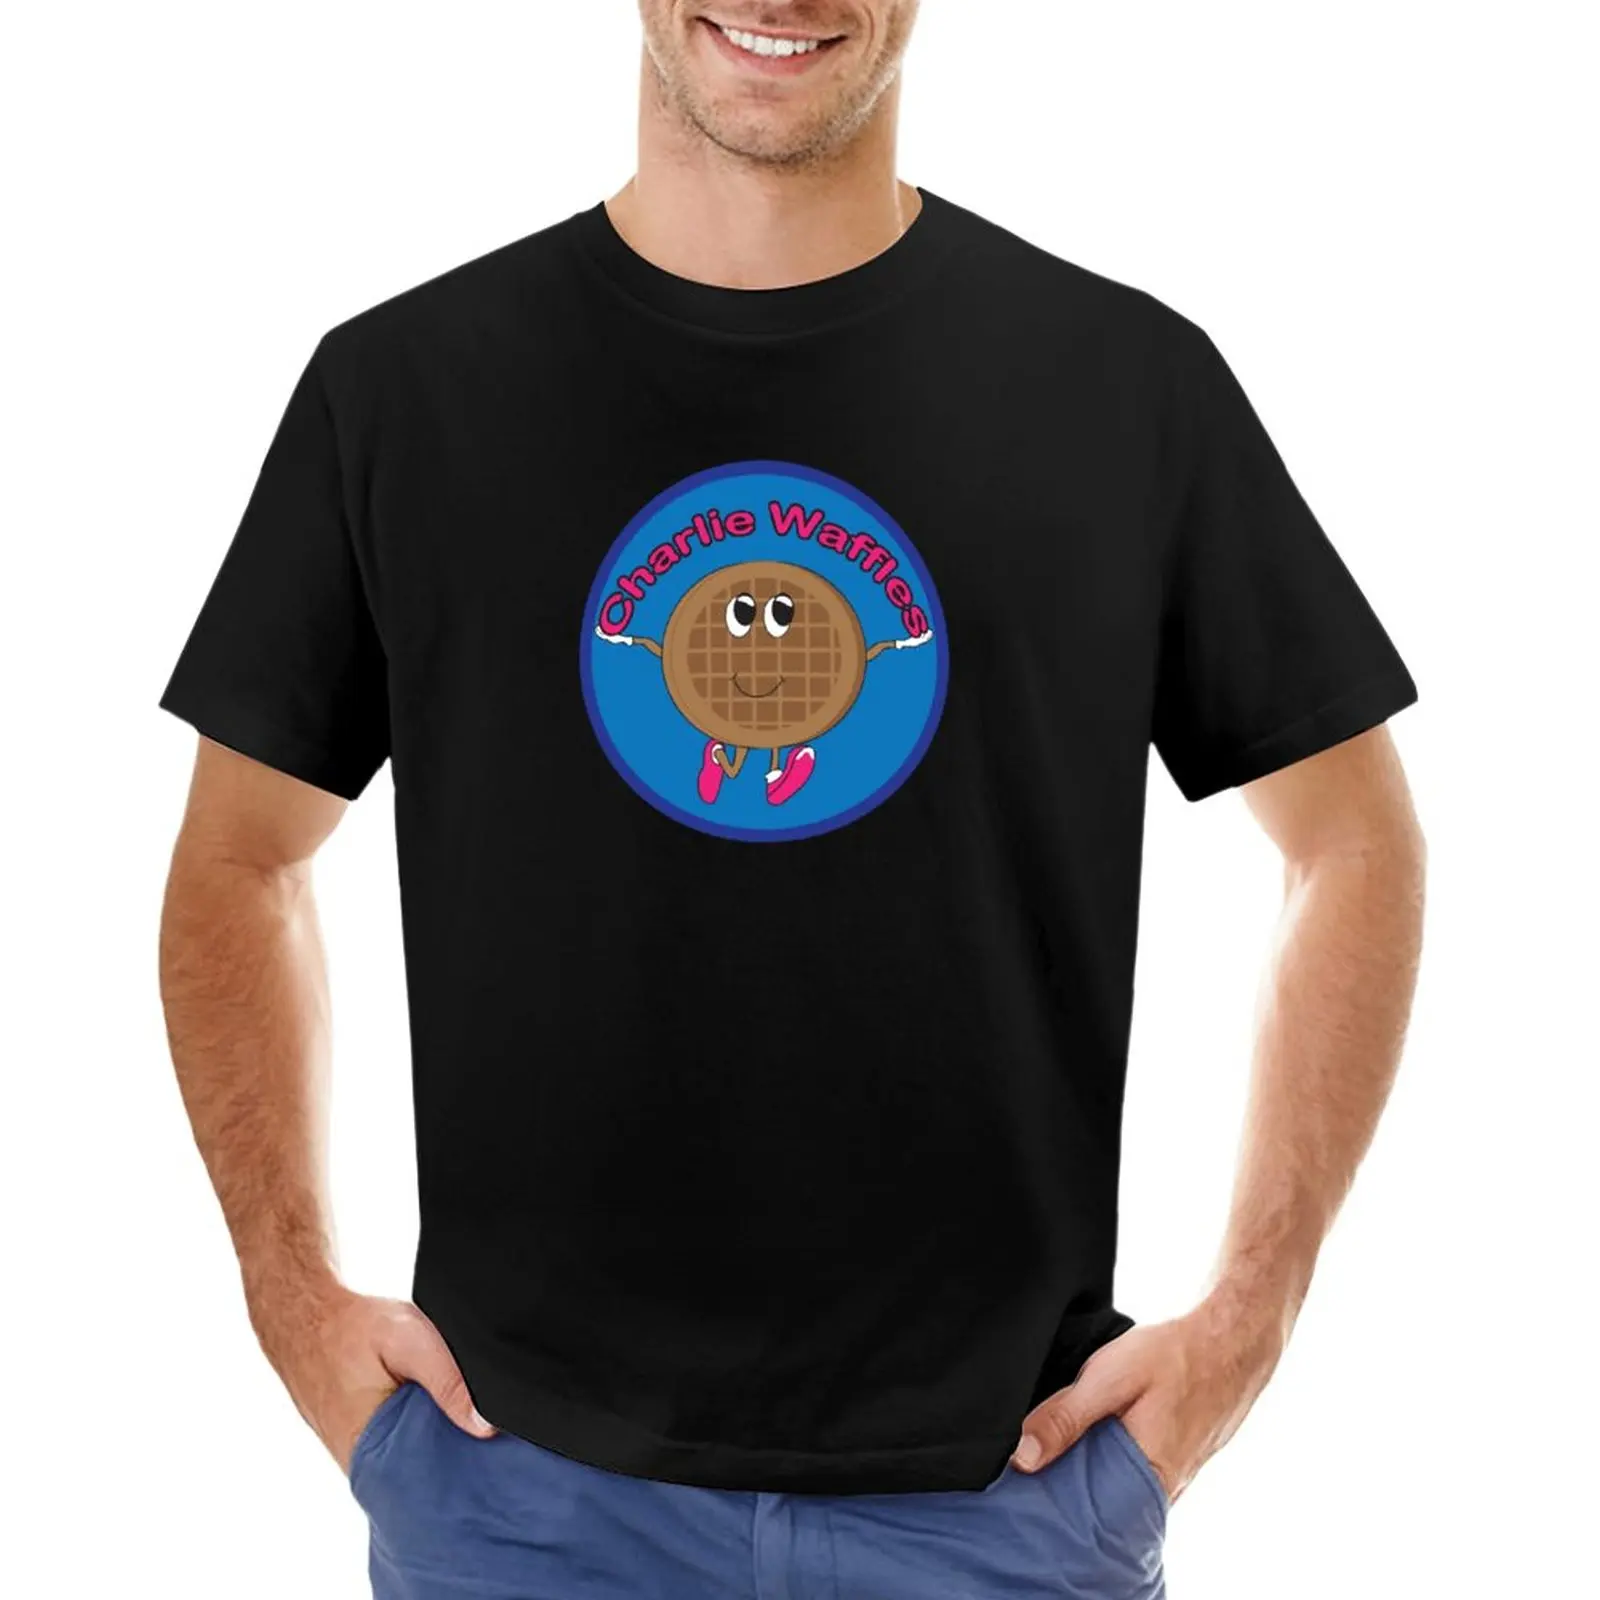 Charlie Waffles! Футболка, короткая одежда в стиле хиппи, мужские футболки с графическим рисунком.